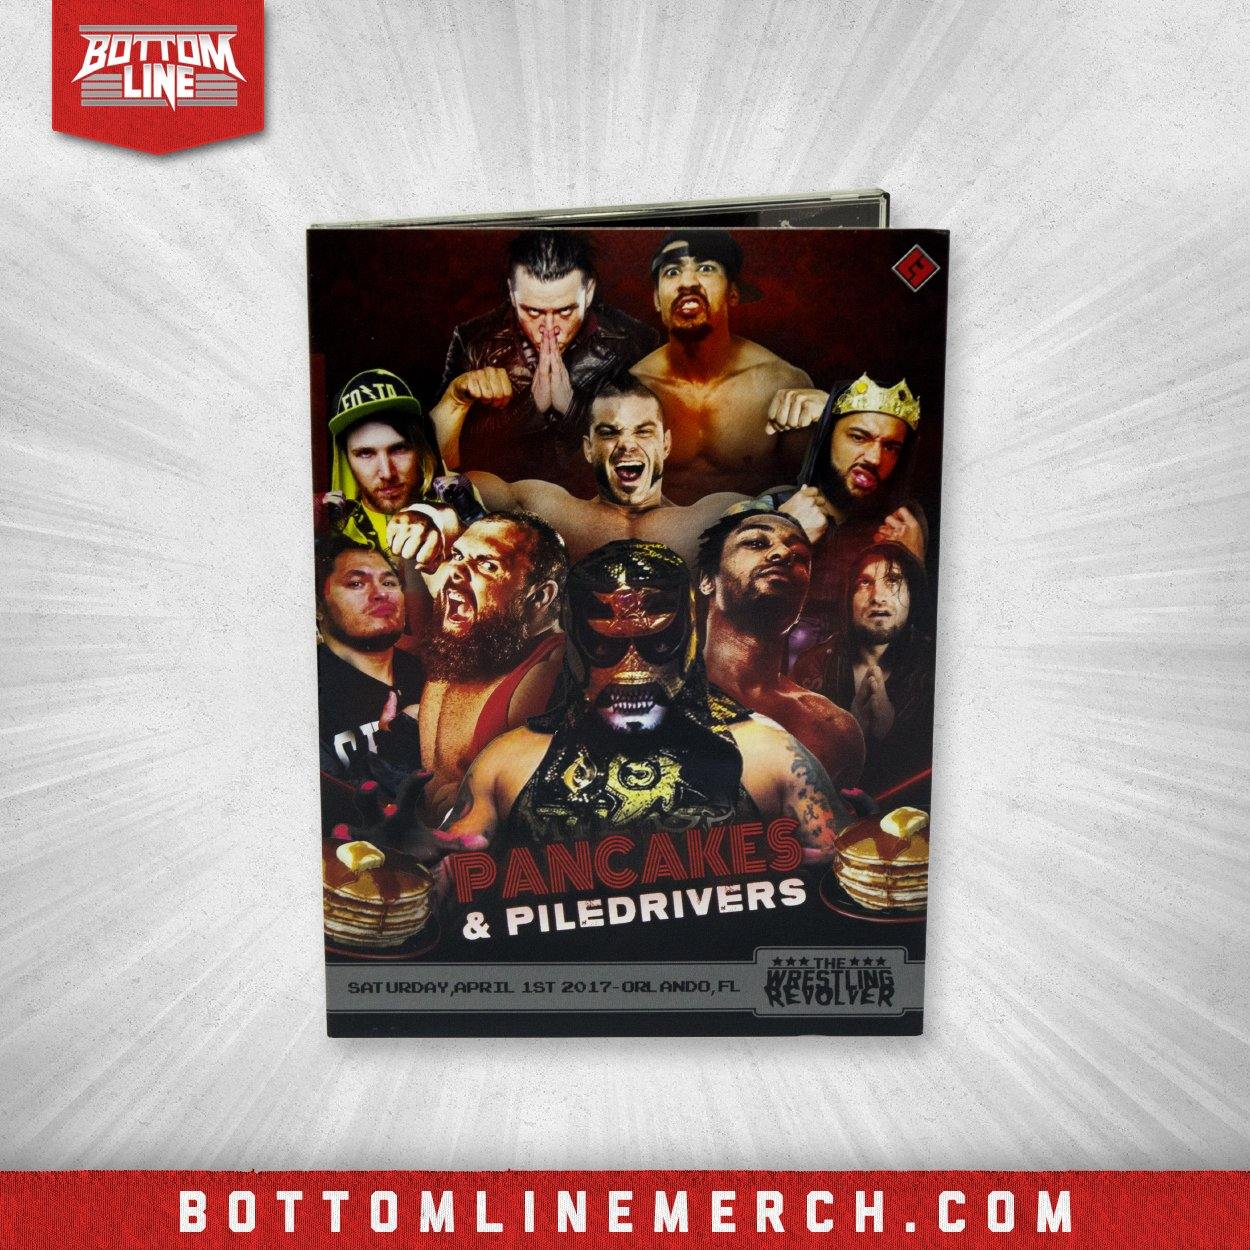 Buy Now – The Wrestling Revolver "Pancakes & Piledrivers" DVD (04/01/2017) – Wrestler & Wrestling Merch – Bottom Line